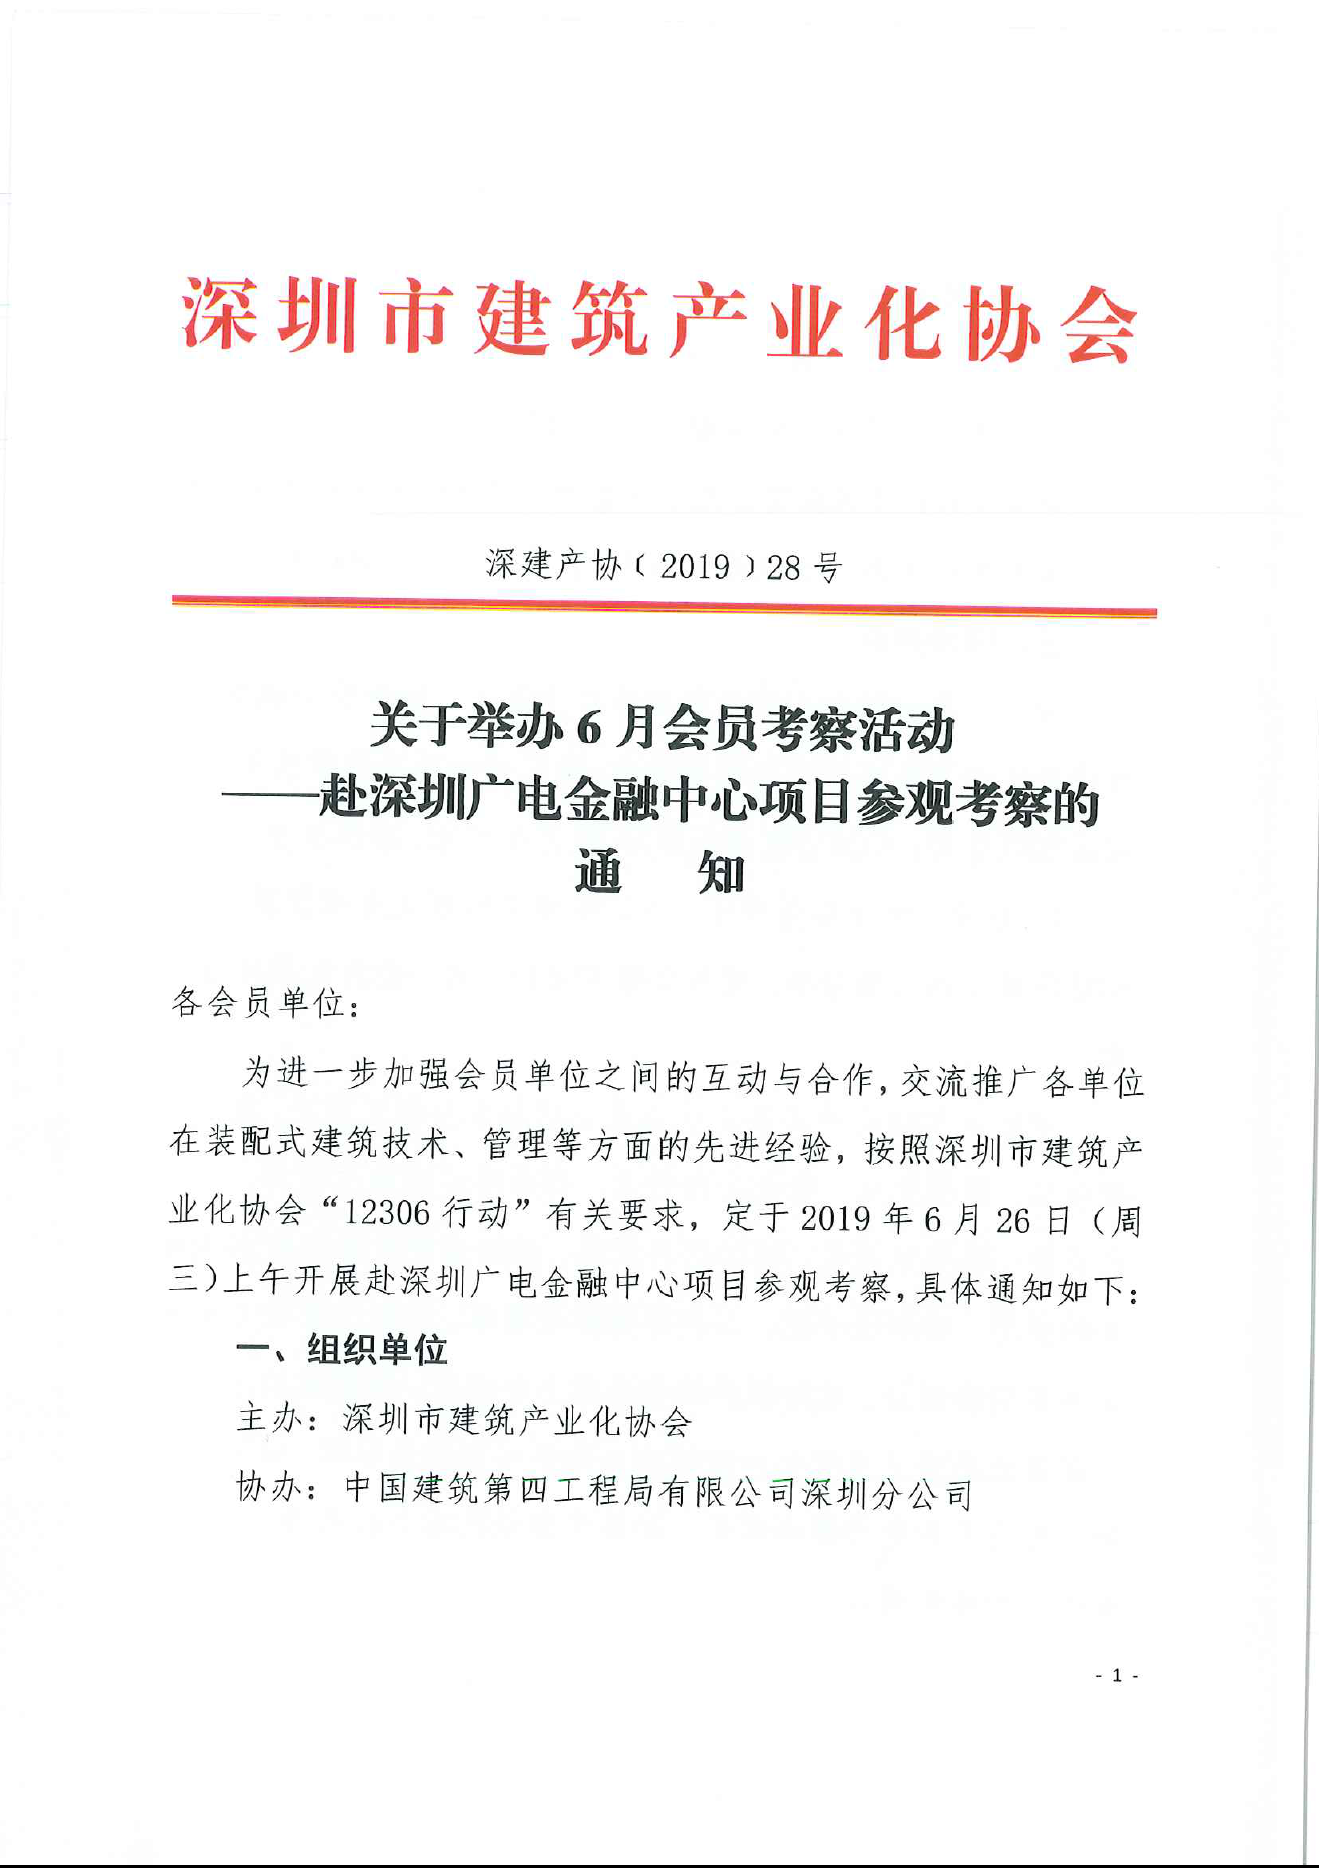 关于举办6月会员考察活动 ——赴深圳广电金融中心项目参观考察的通知